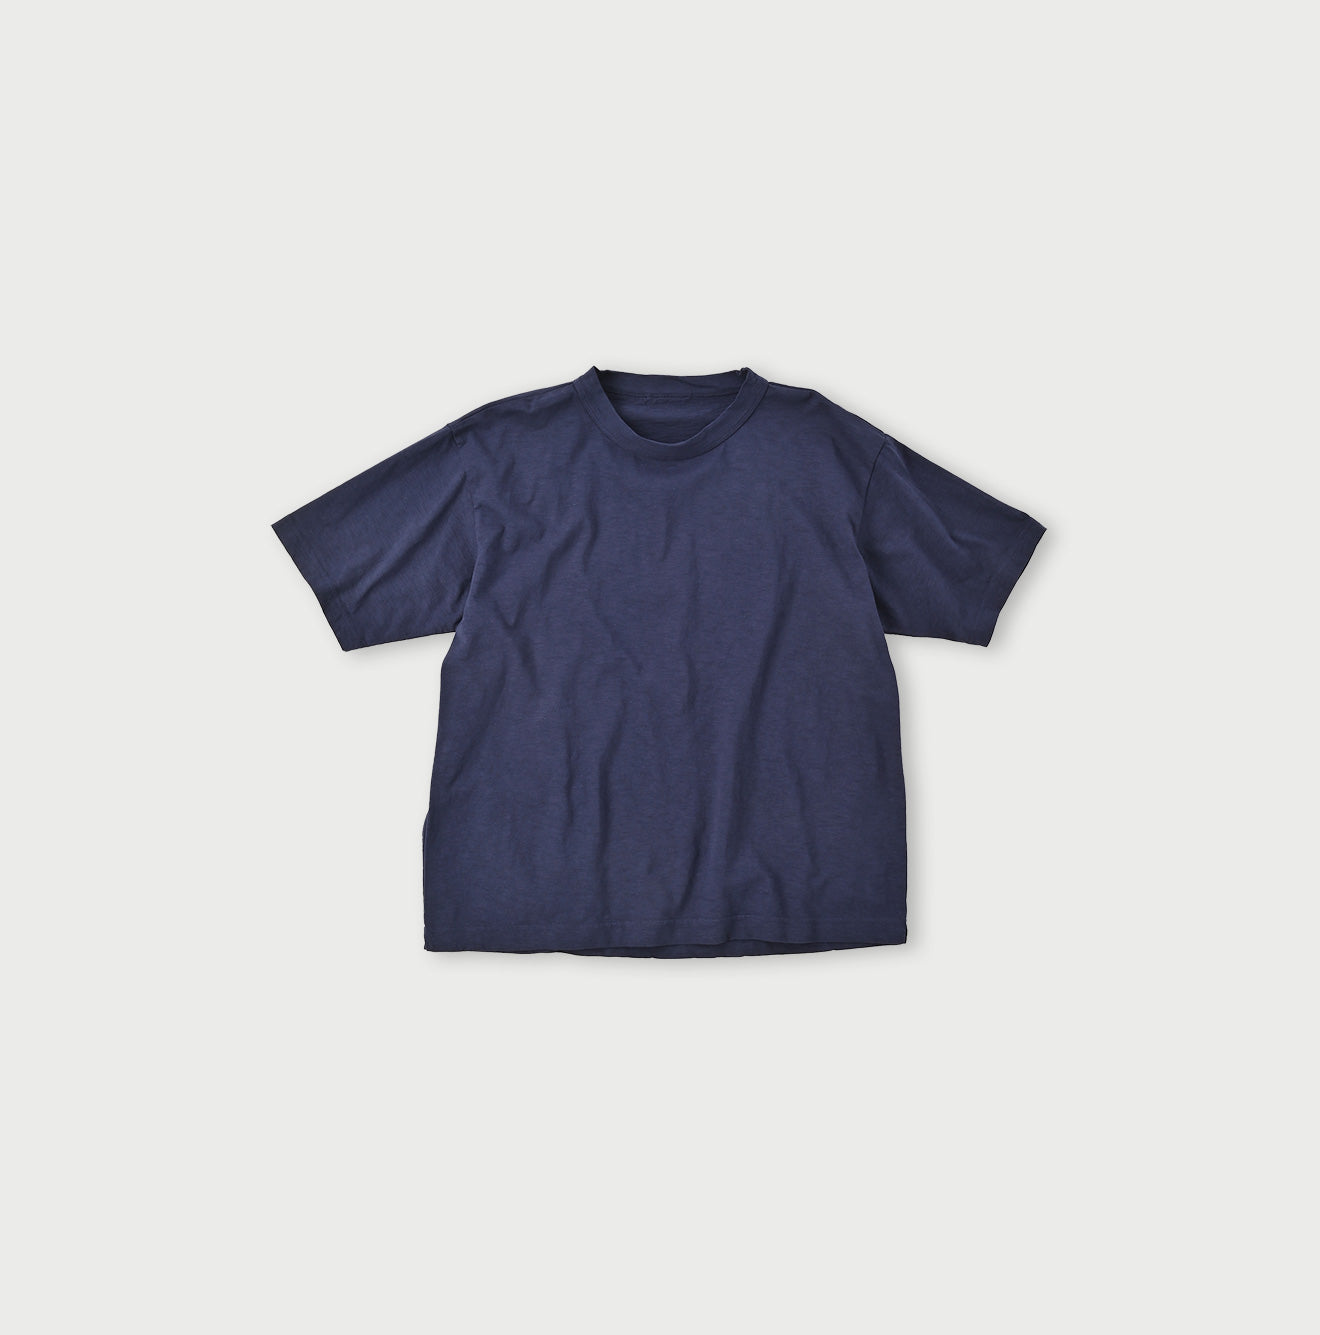 908 Ocean T-shirt